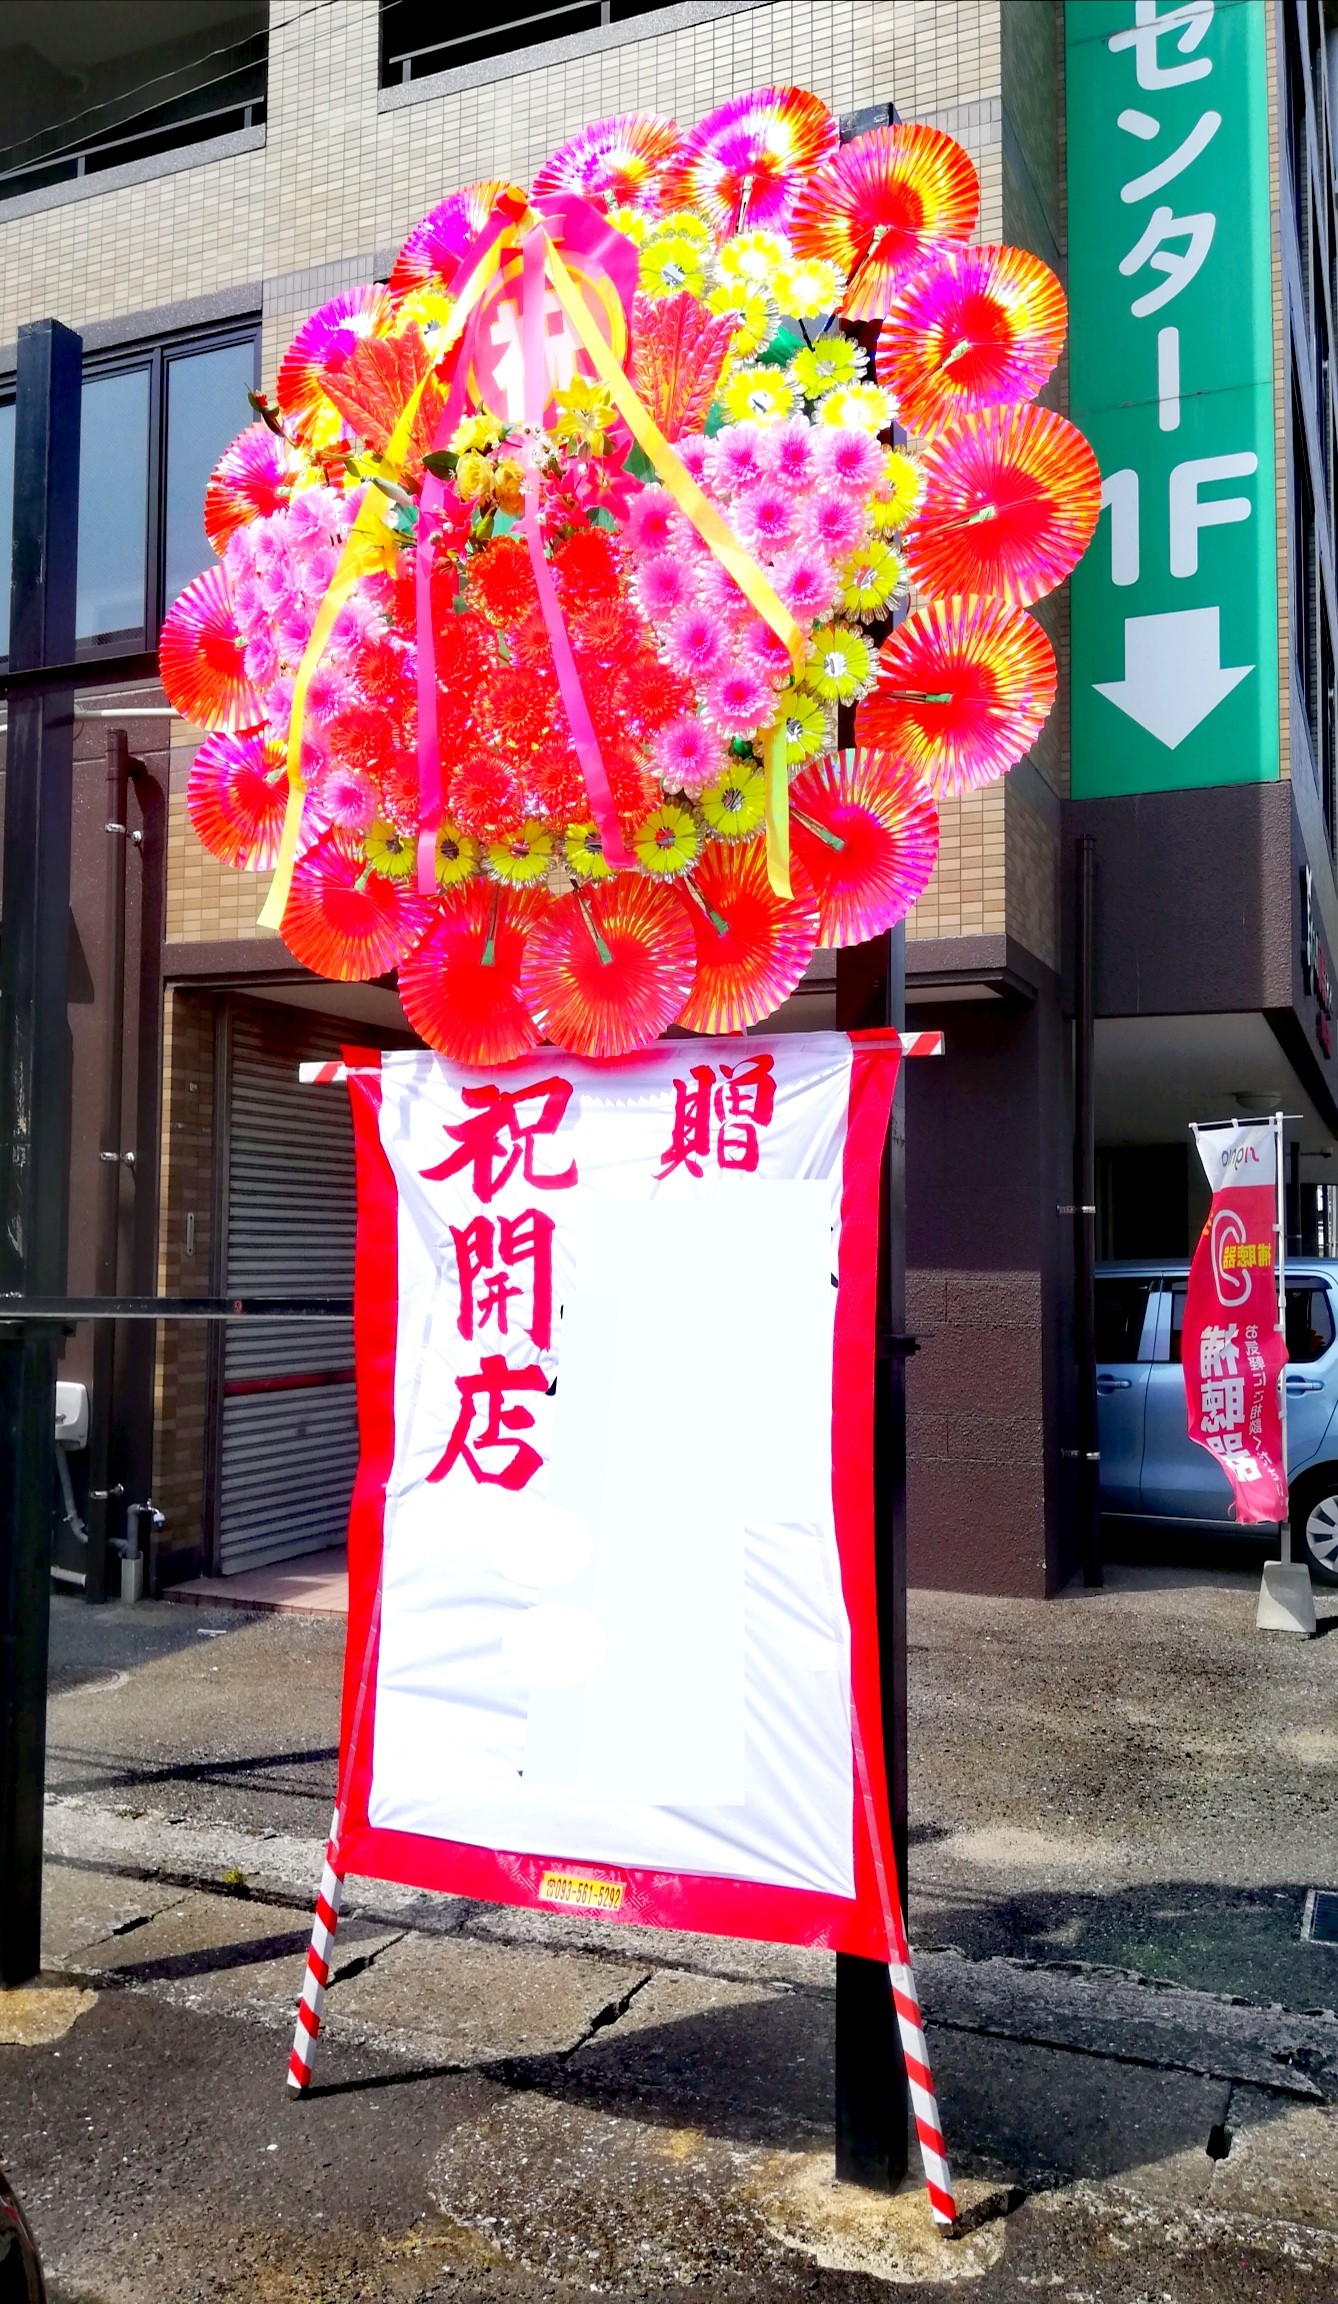 花屋 花家shinyoshi 花輪 花環 はなわ 福岡県北九州市小倉北区のフラワーショップです フラワースタンド バルーン フラワーアレンジメント 胡蝶蘭などギフト商品も取り扱っております